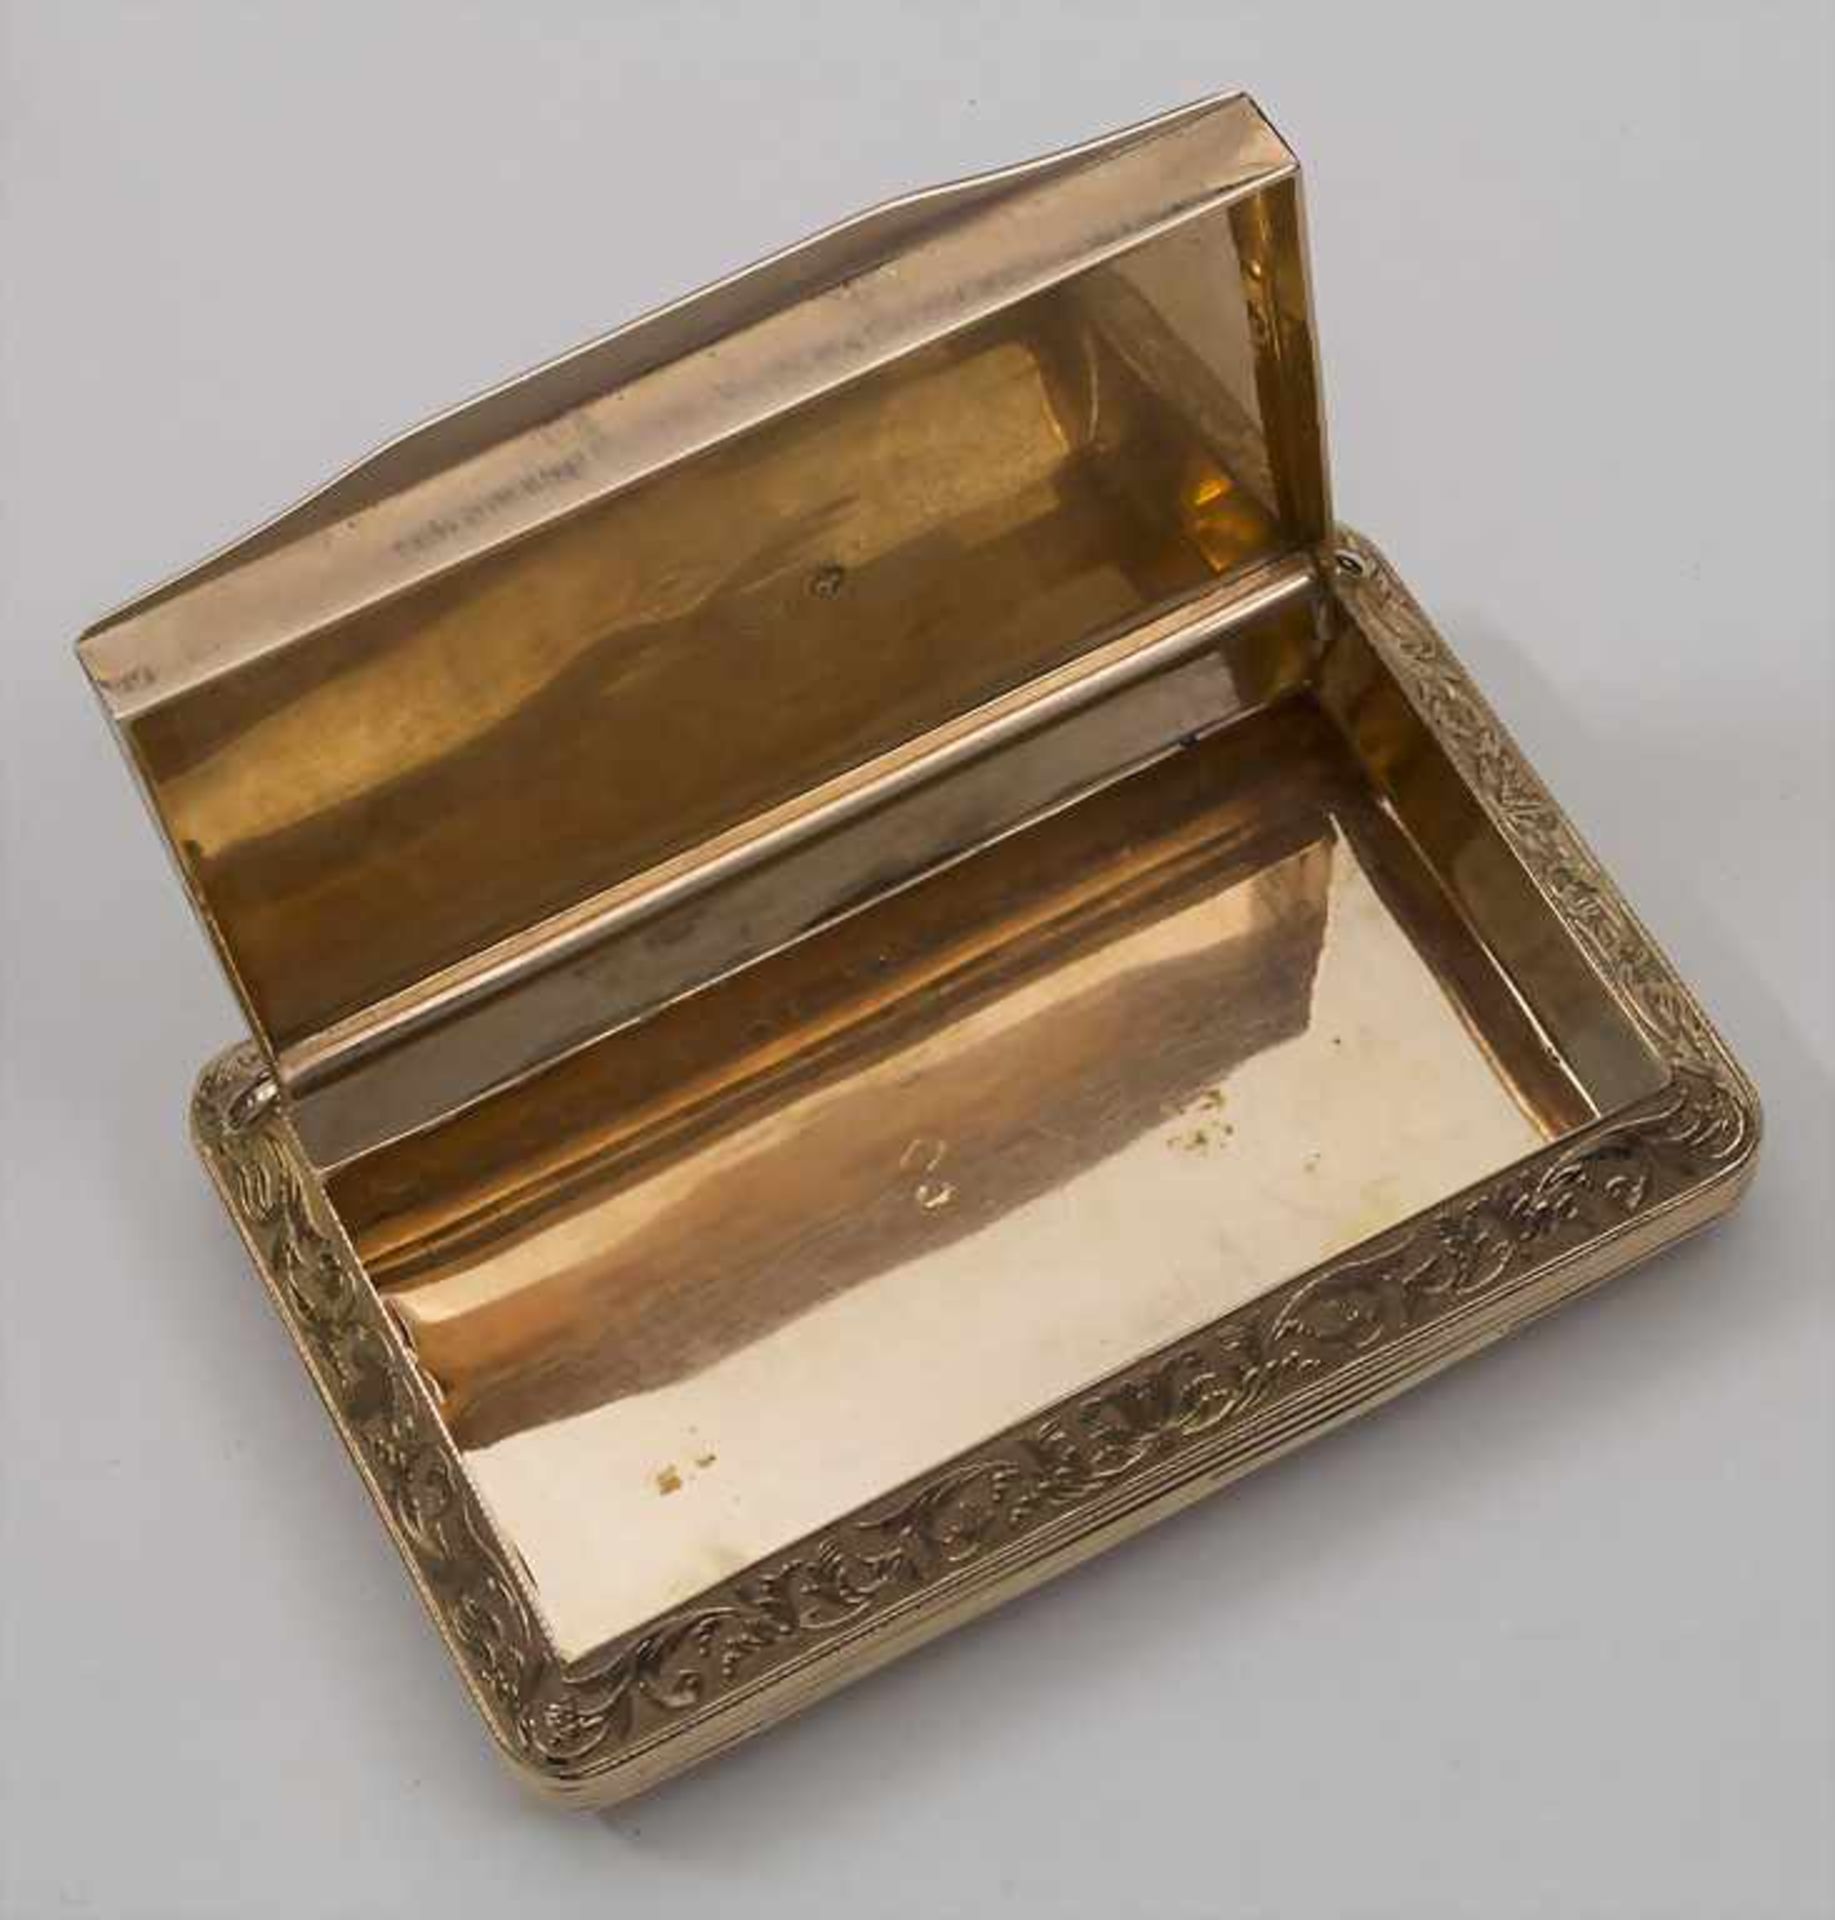 Tabatiere / A tobacco tin, Paris, 1819-1839Material: GG 18 Kt 750/000, Beschaumarken, Goldmarke, - Bild 2 aus 3